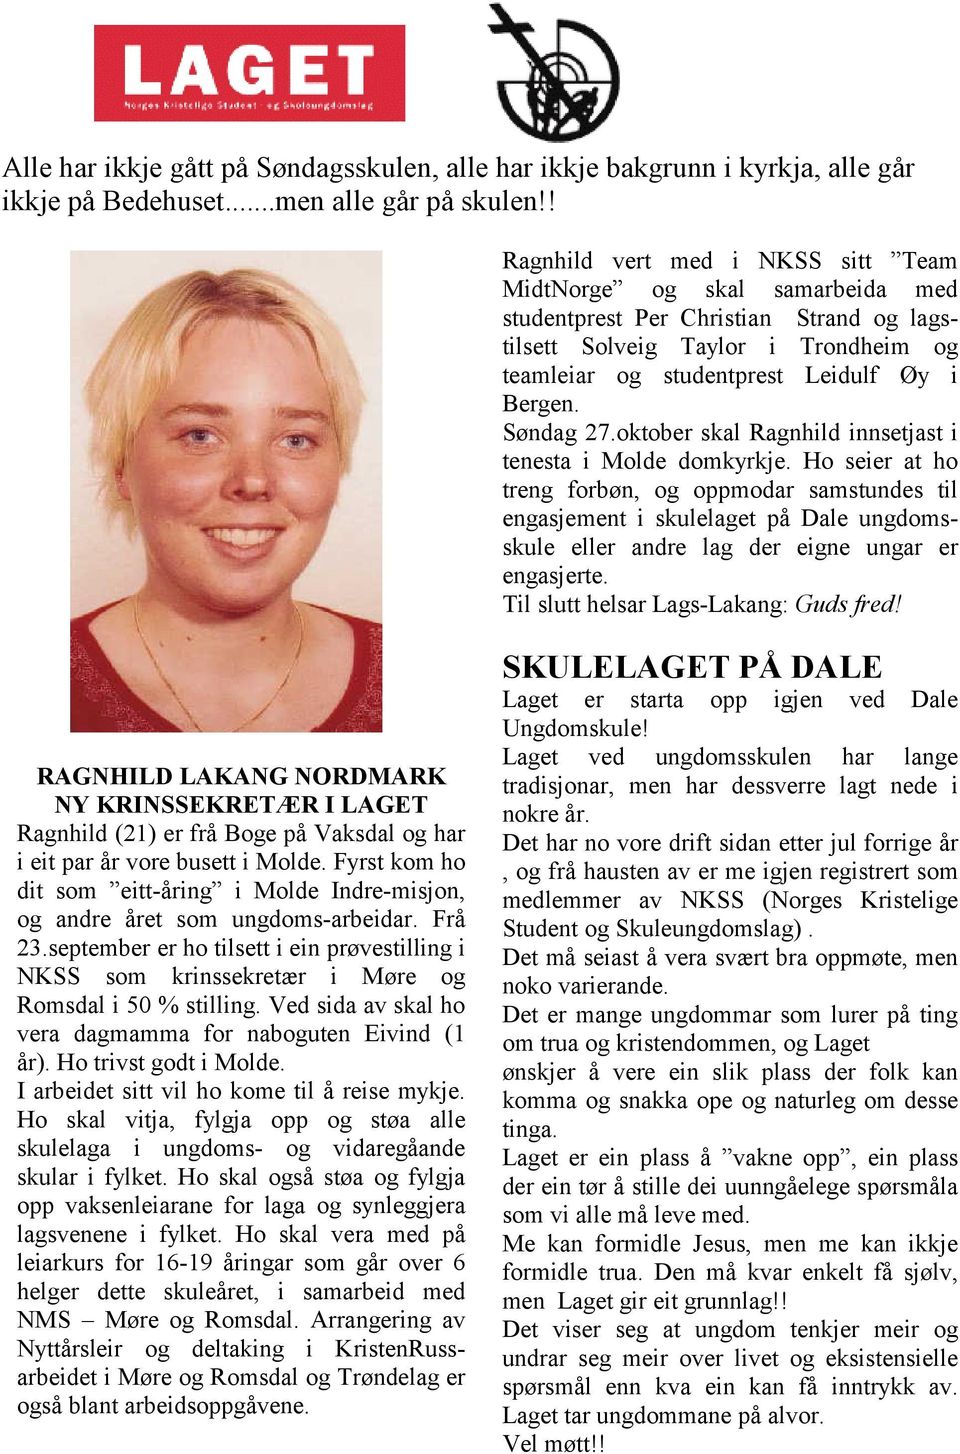 Søndag 27.oktober skal Ragnhild innsetjast i tenesta i Molde domkyrkje.